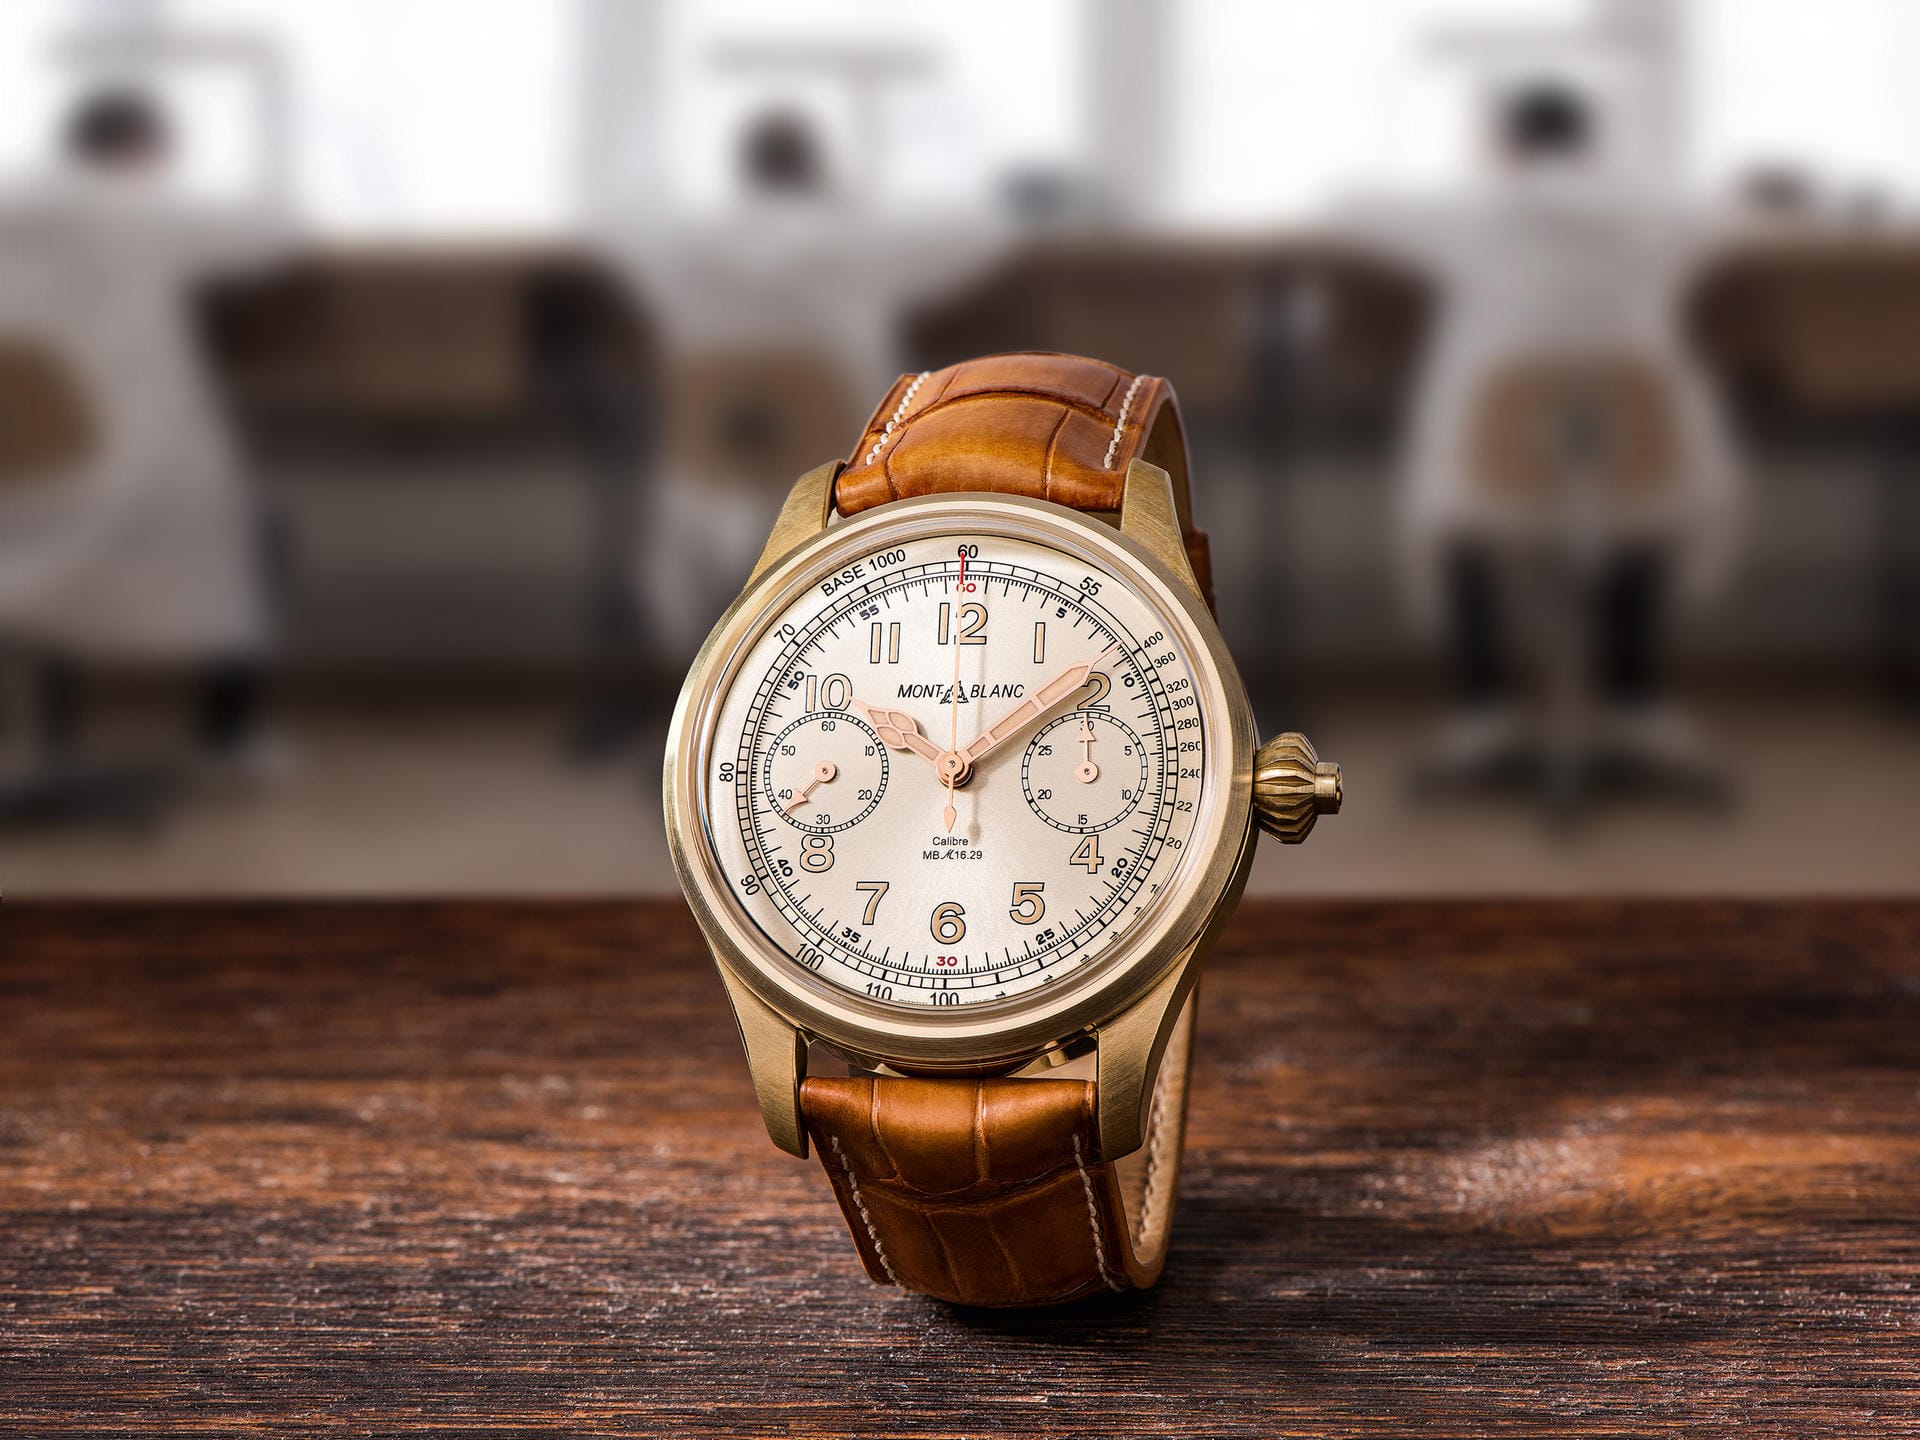 Uhren aus Bronze sind gerade schwer in Mode. Ein interessantes Modelle ist der 1858 Chronograph Tachymeter von Montblanc. 100 Exemplare soll es geben. Der Preis liegt bei rund 27.000 Euro pro Uhr.